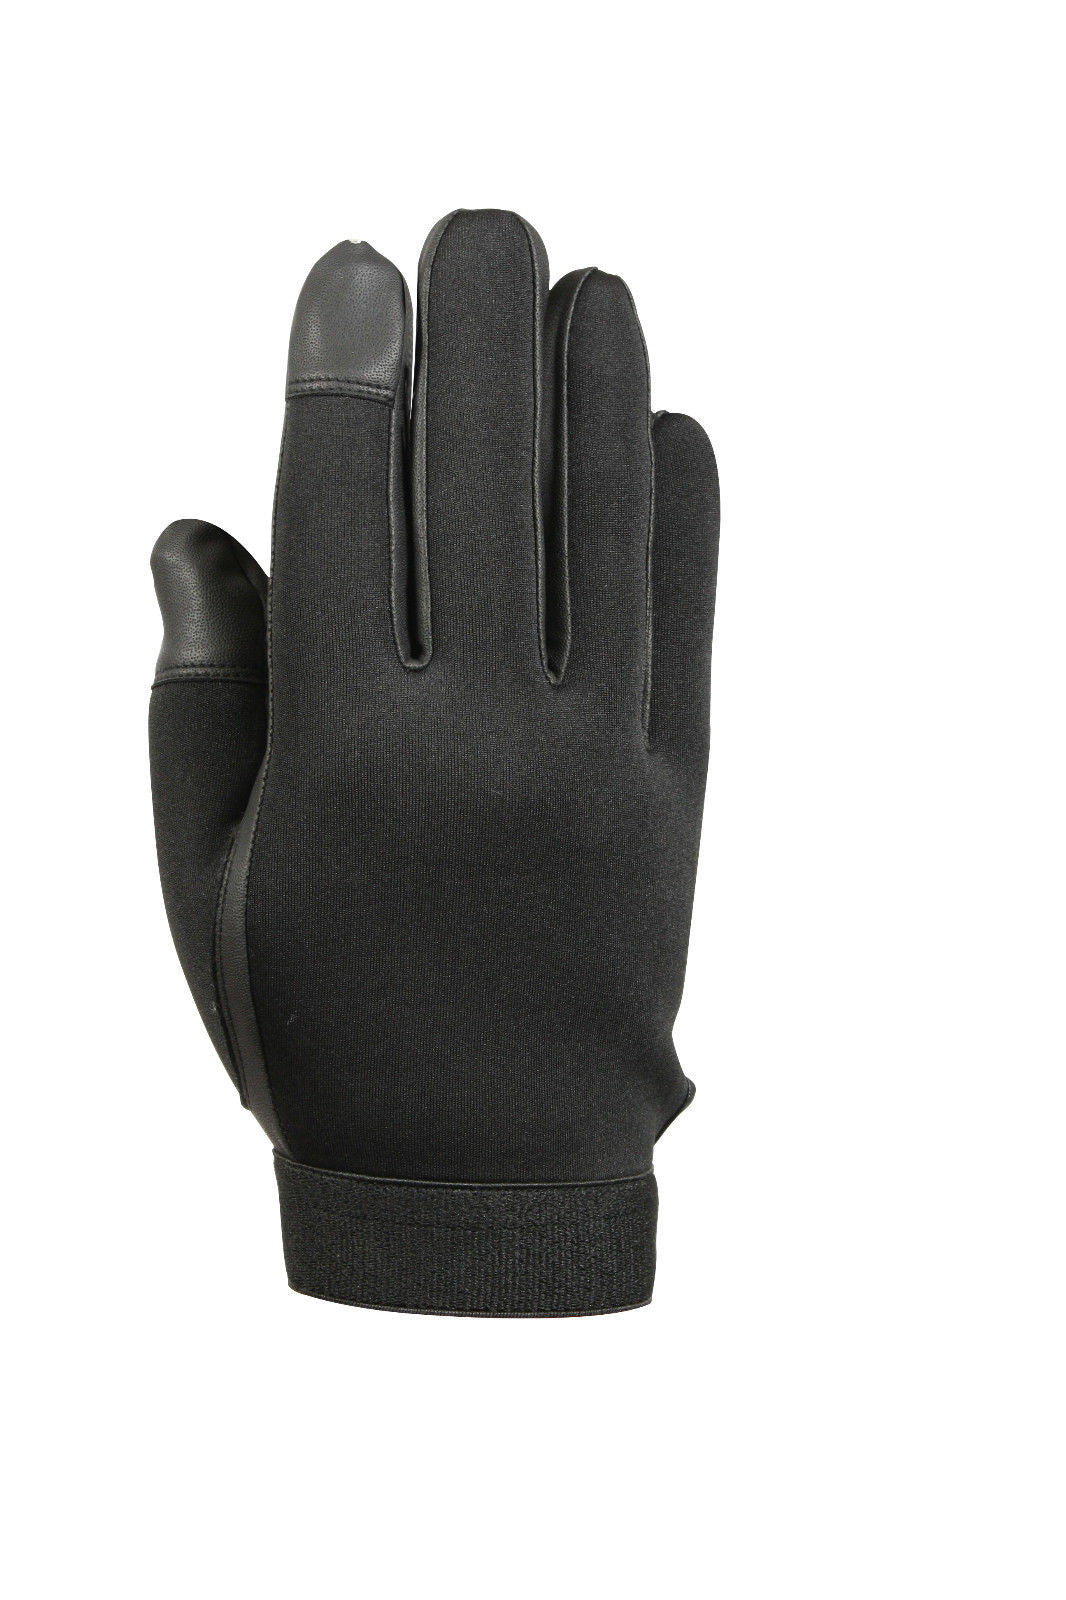 Rothco Touch Screen Neoprene Duty Gloves - Black